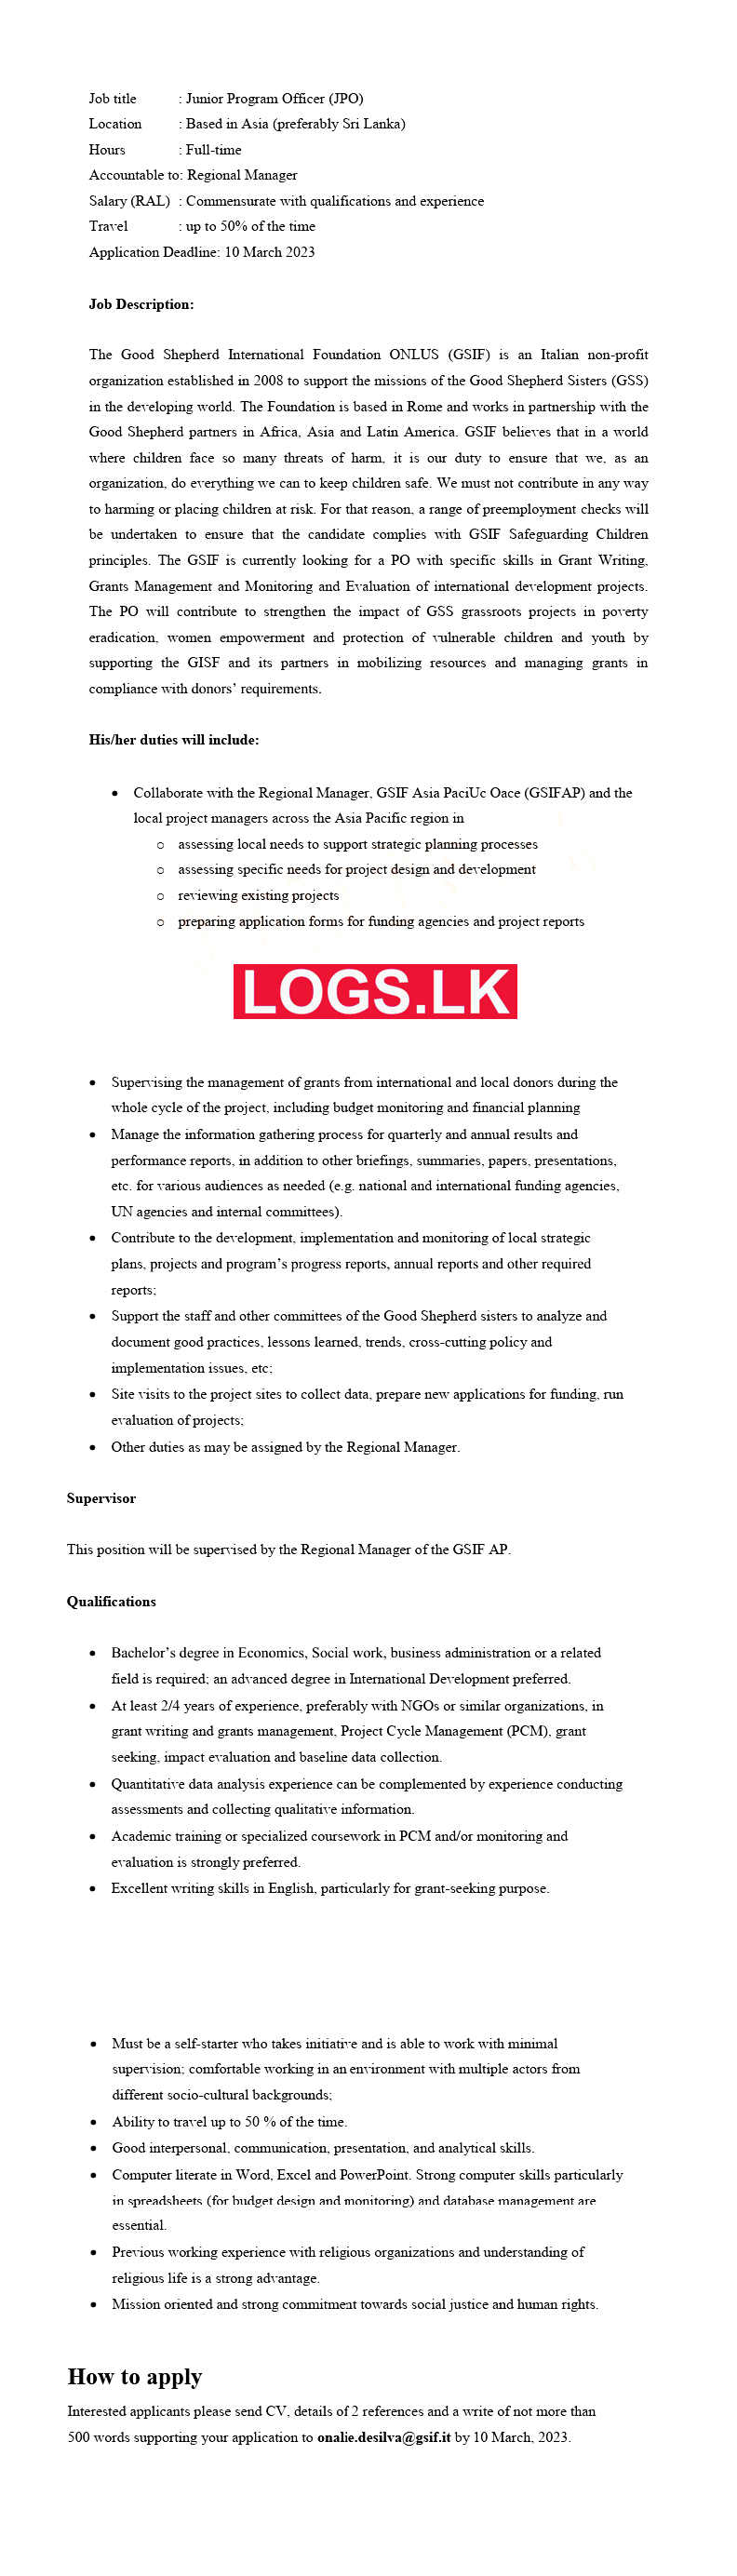 Junior Program Officer Job Vacancy at GSIF Sri Lanka Application, Details Download